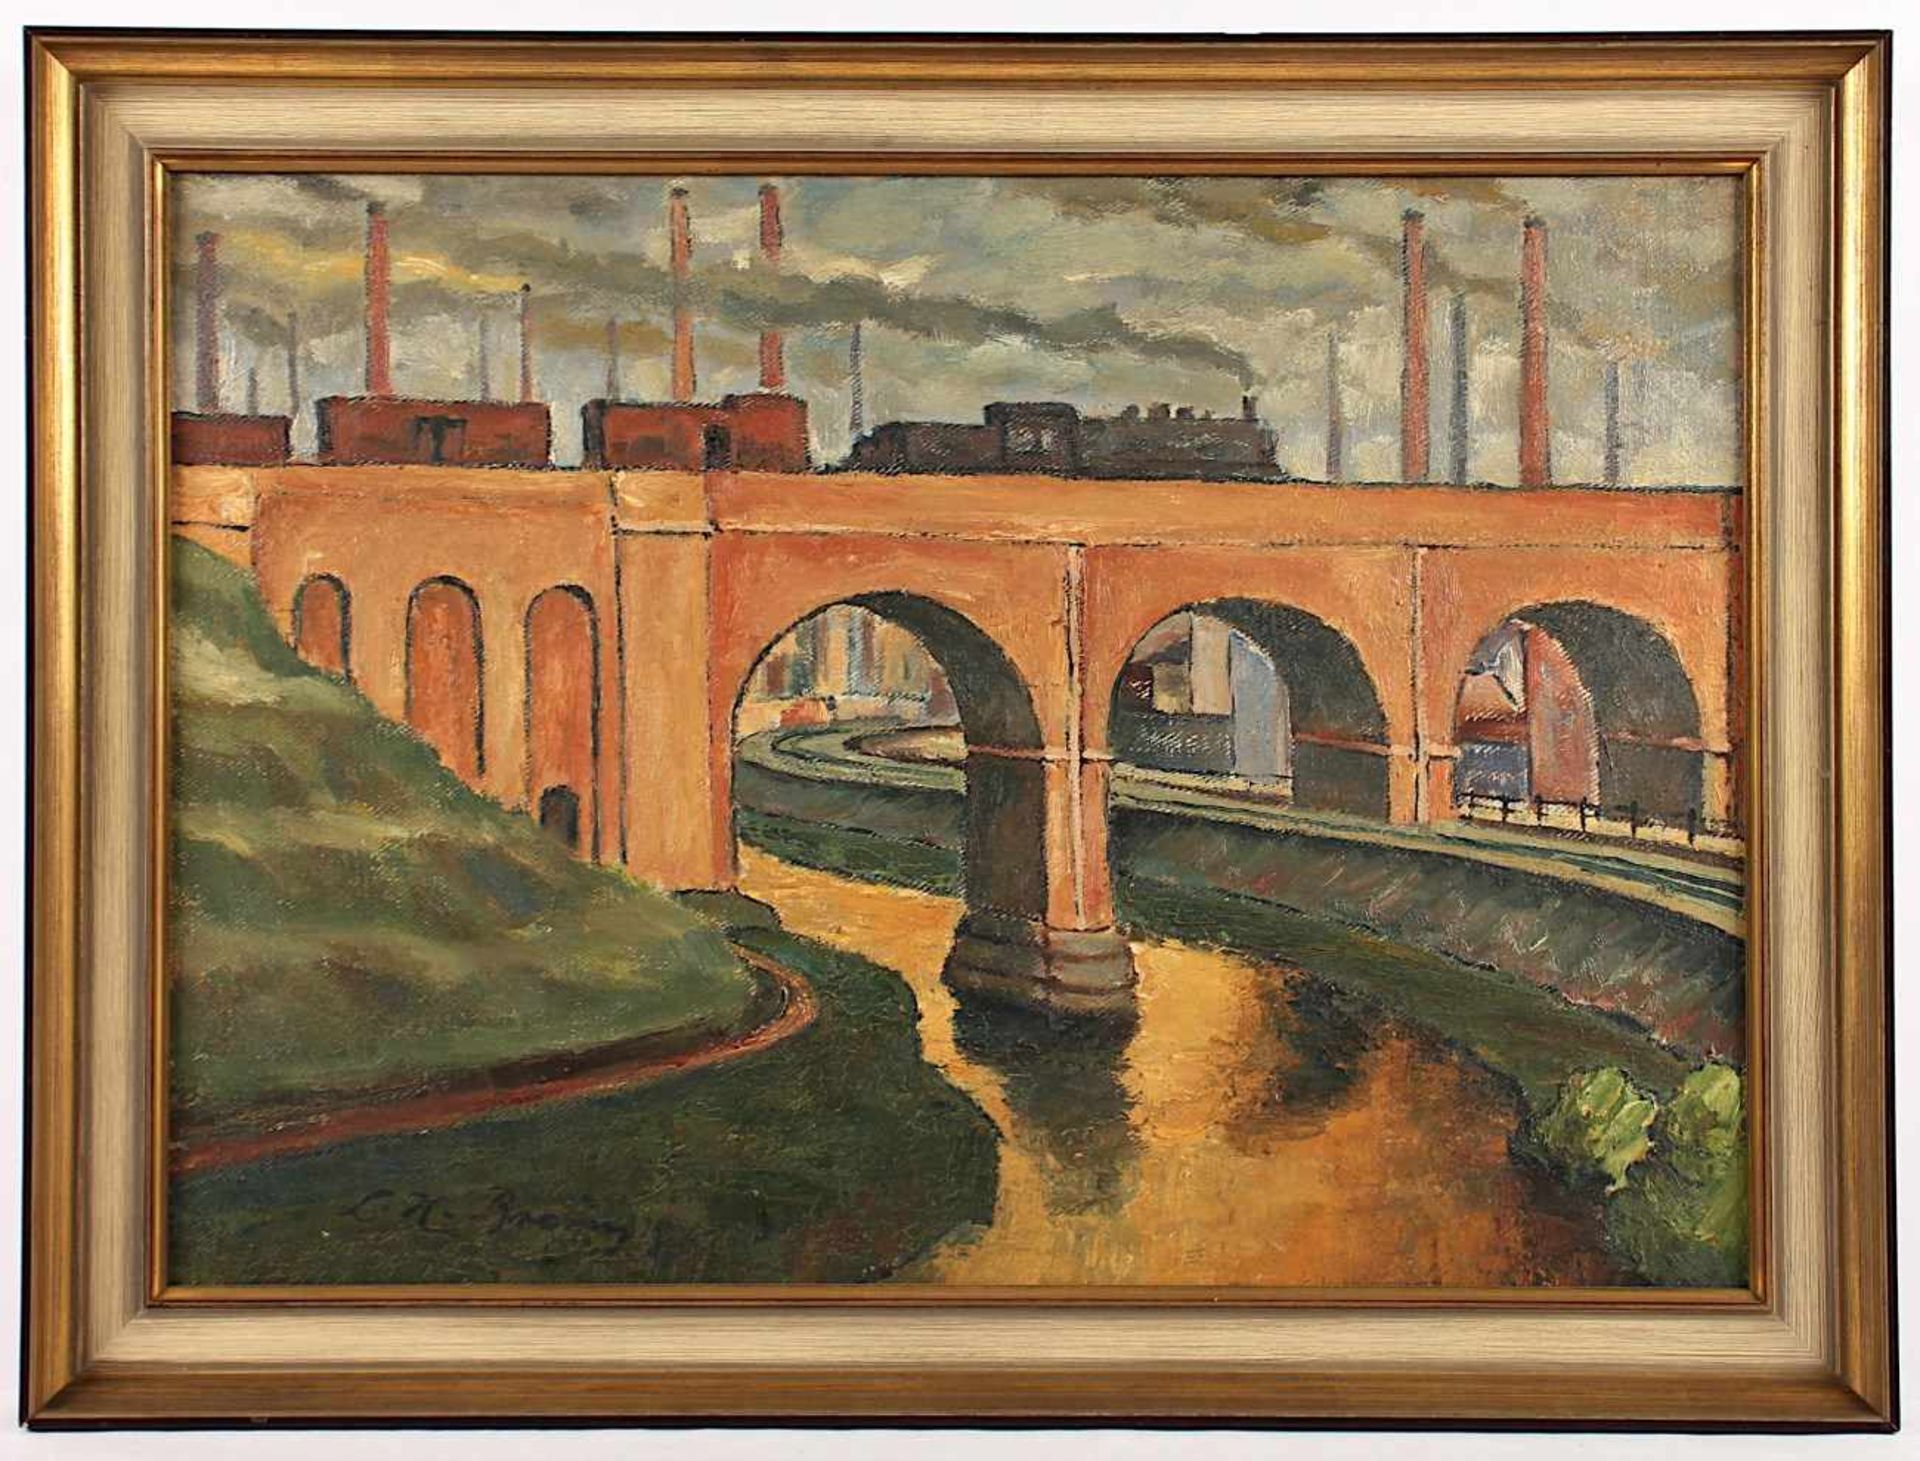 BRAUN, Leo Hubert (1891-1969), "Viadukt mit Eisenbahn", Öl/Lwd., 50 x 70, unten links signiert